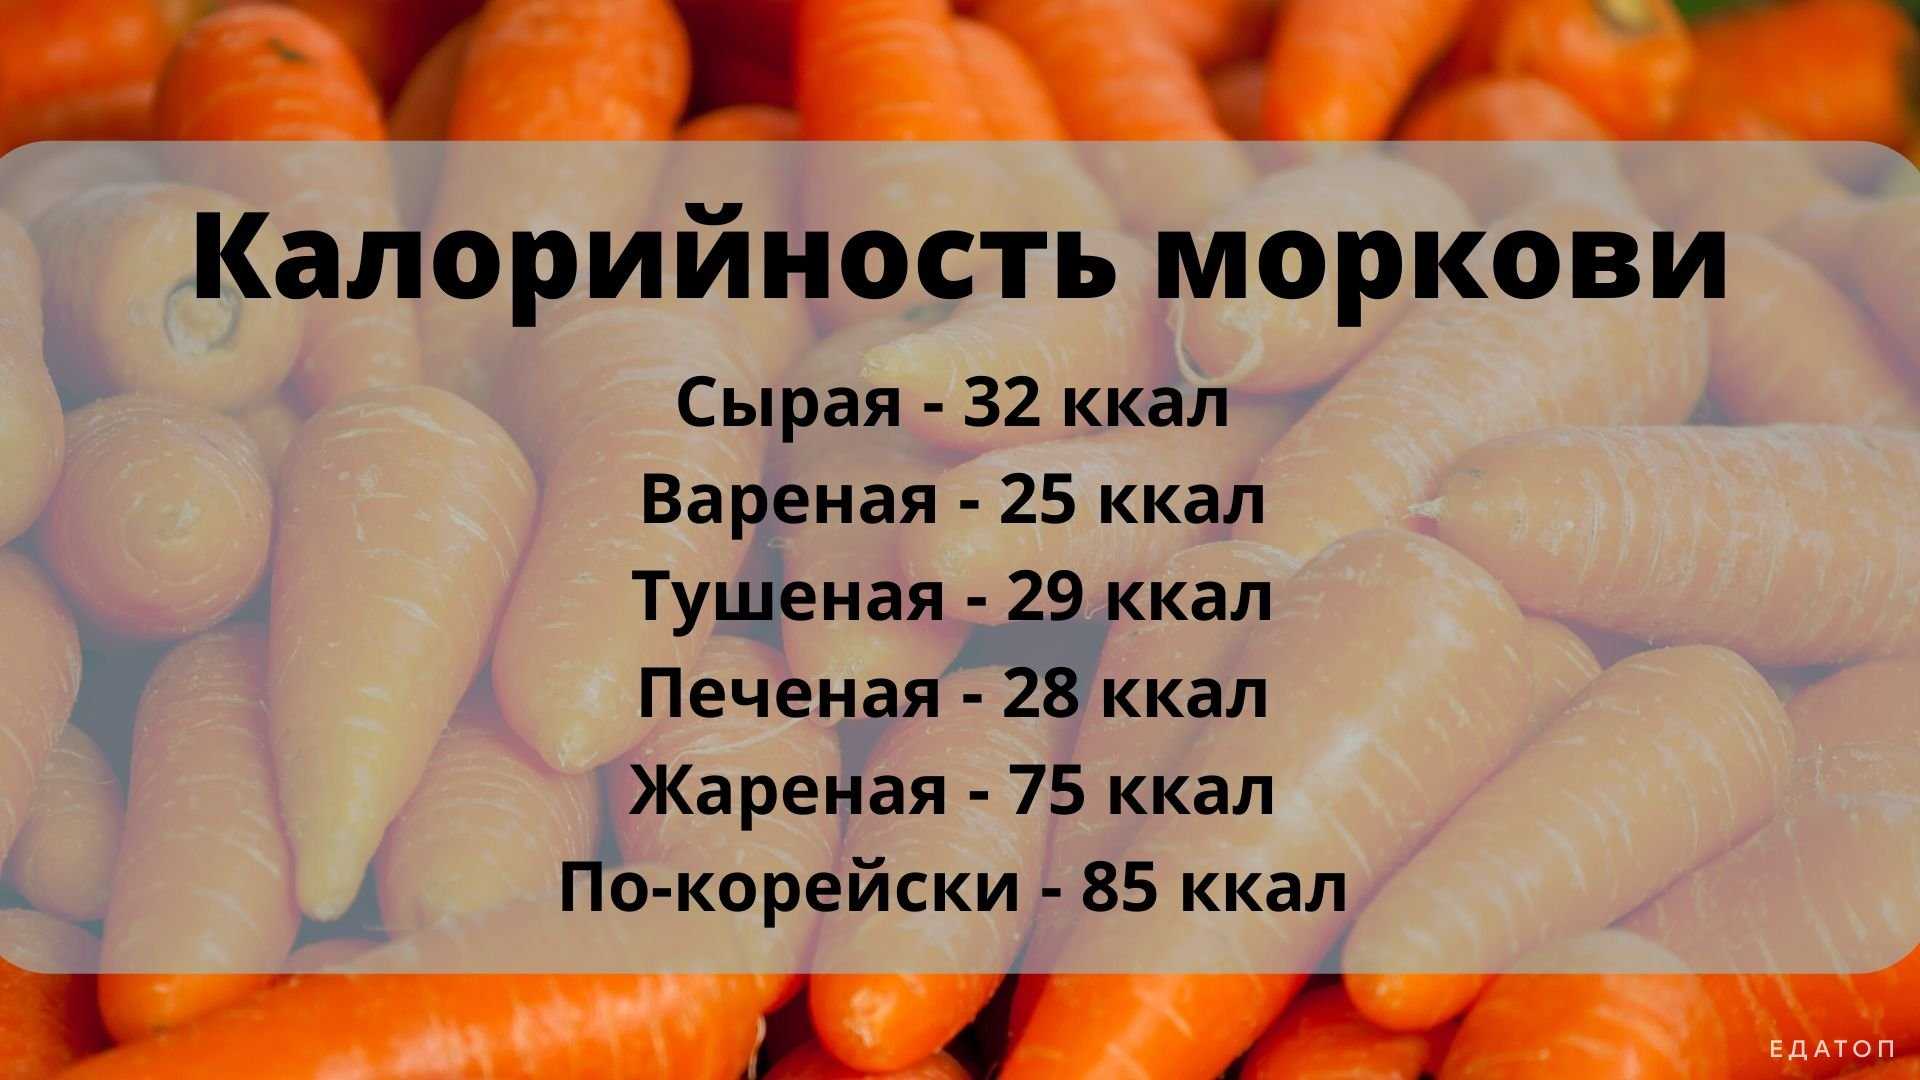 В моркови есть вода